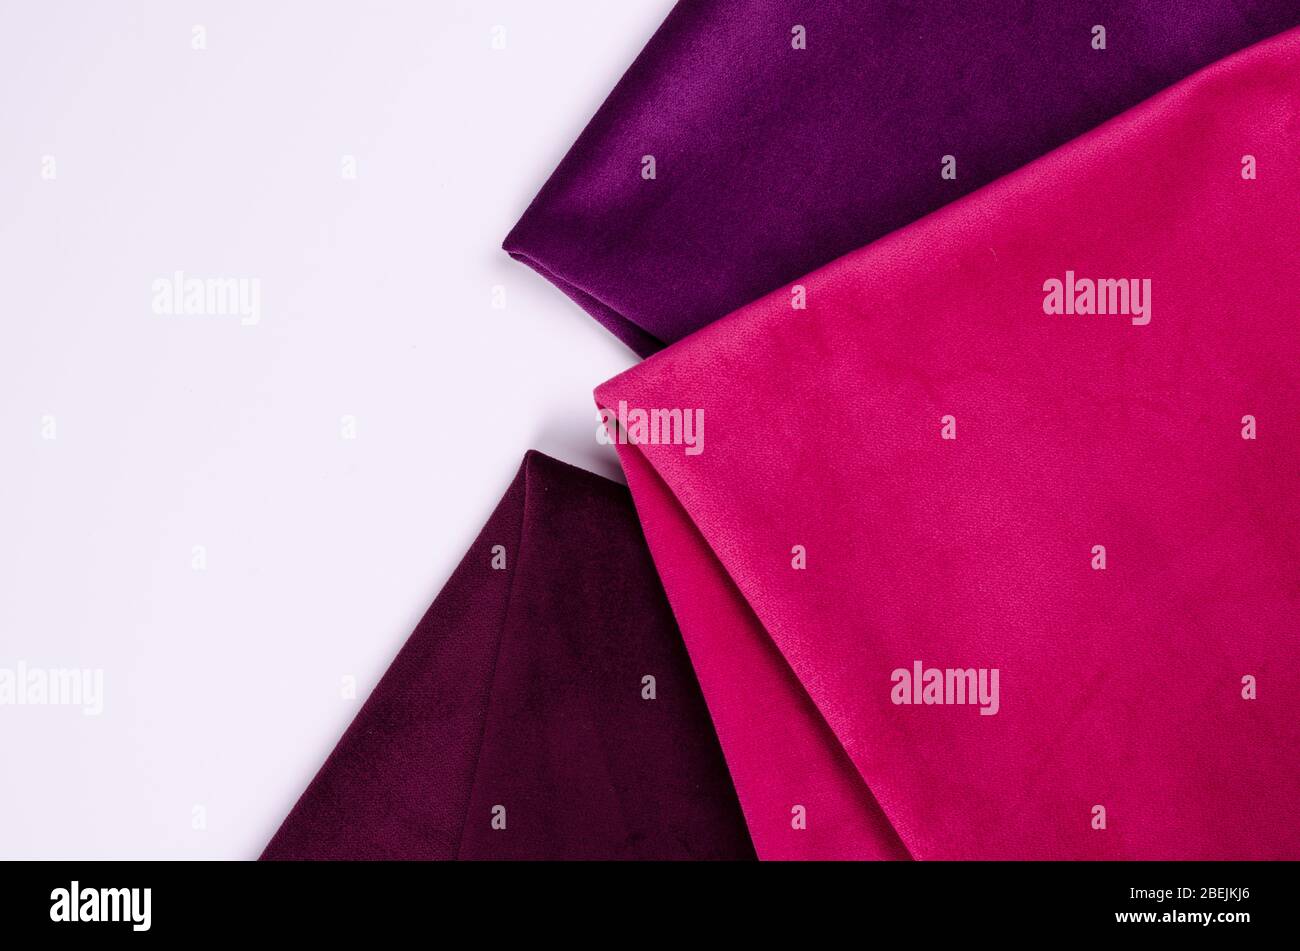 Collection abstraite et colorée d'échantillons de textile en velours aux couleurs rose et violet. Fond de texture de tissu Banque D'Images